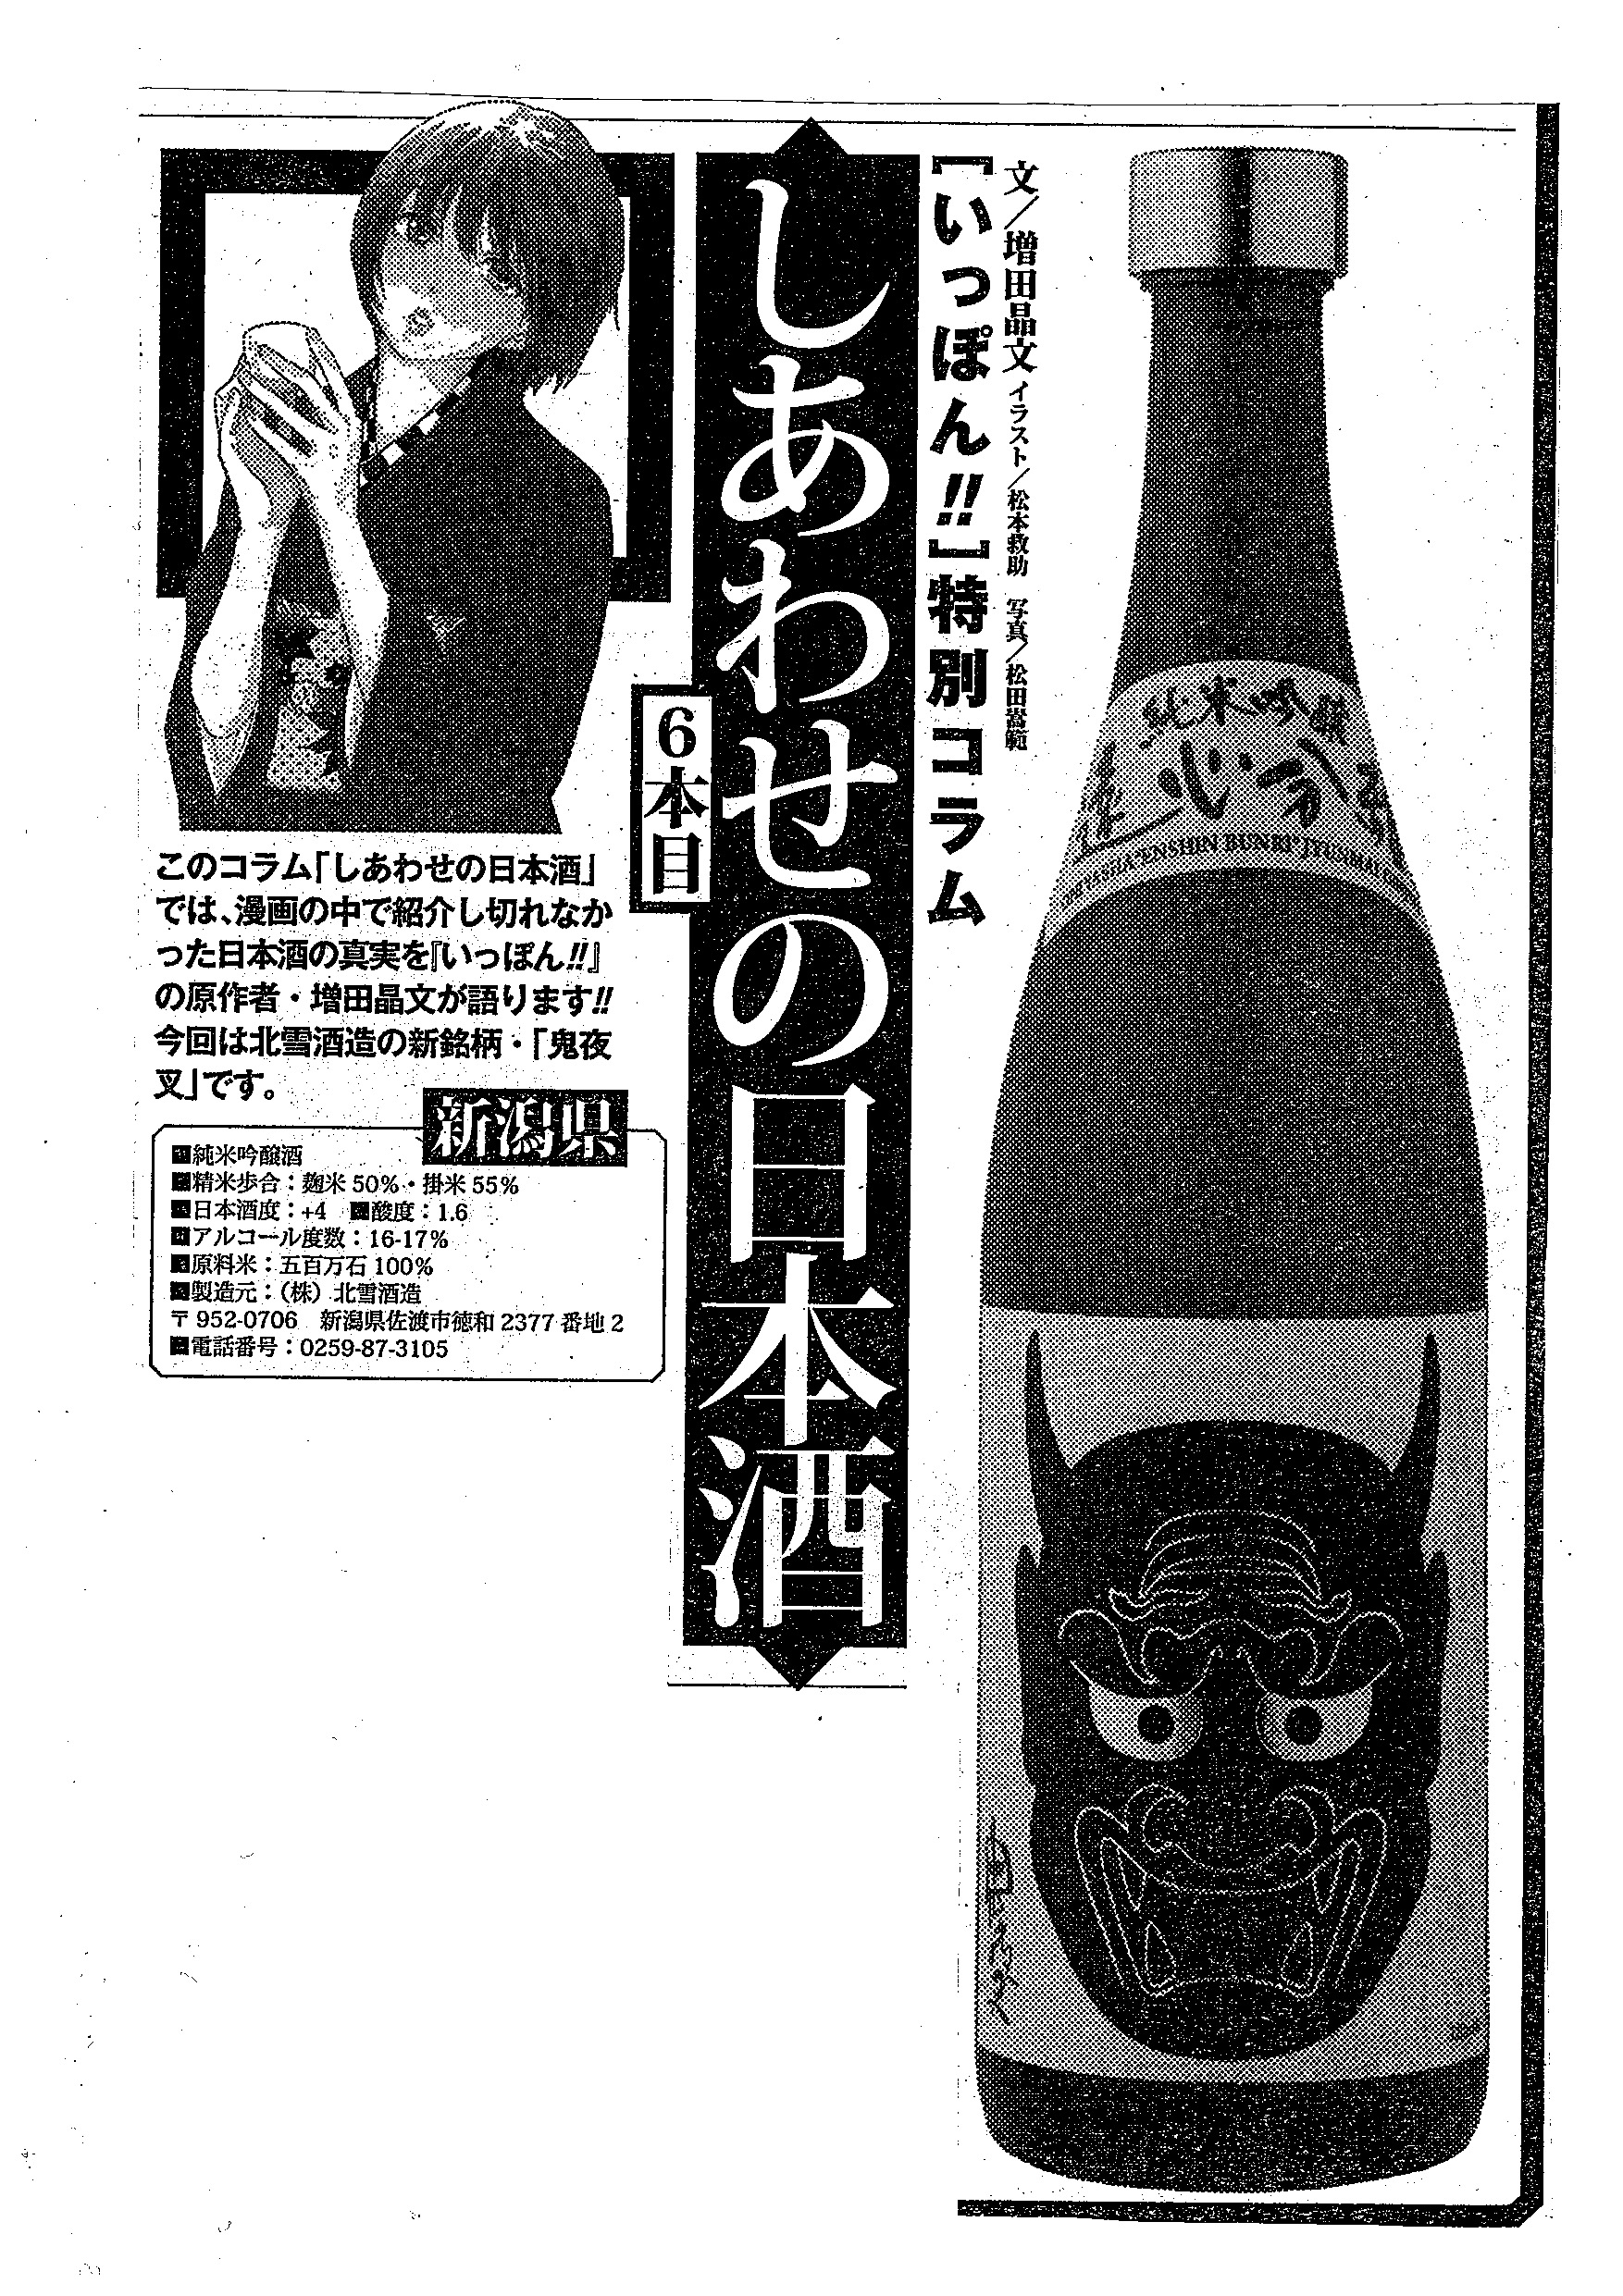 いっぽん しあわせの日本酒 に取り上げていただきました 佐渡島から世界へ羽ばたく 日本酒 Hokusetsu